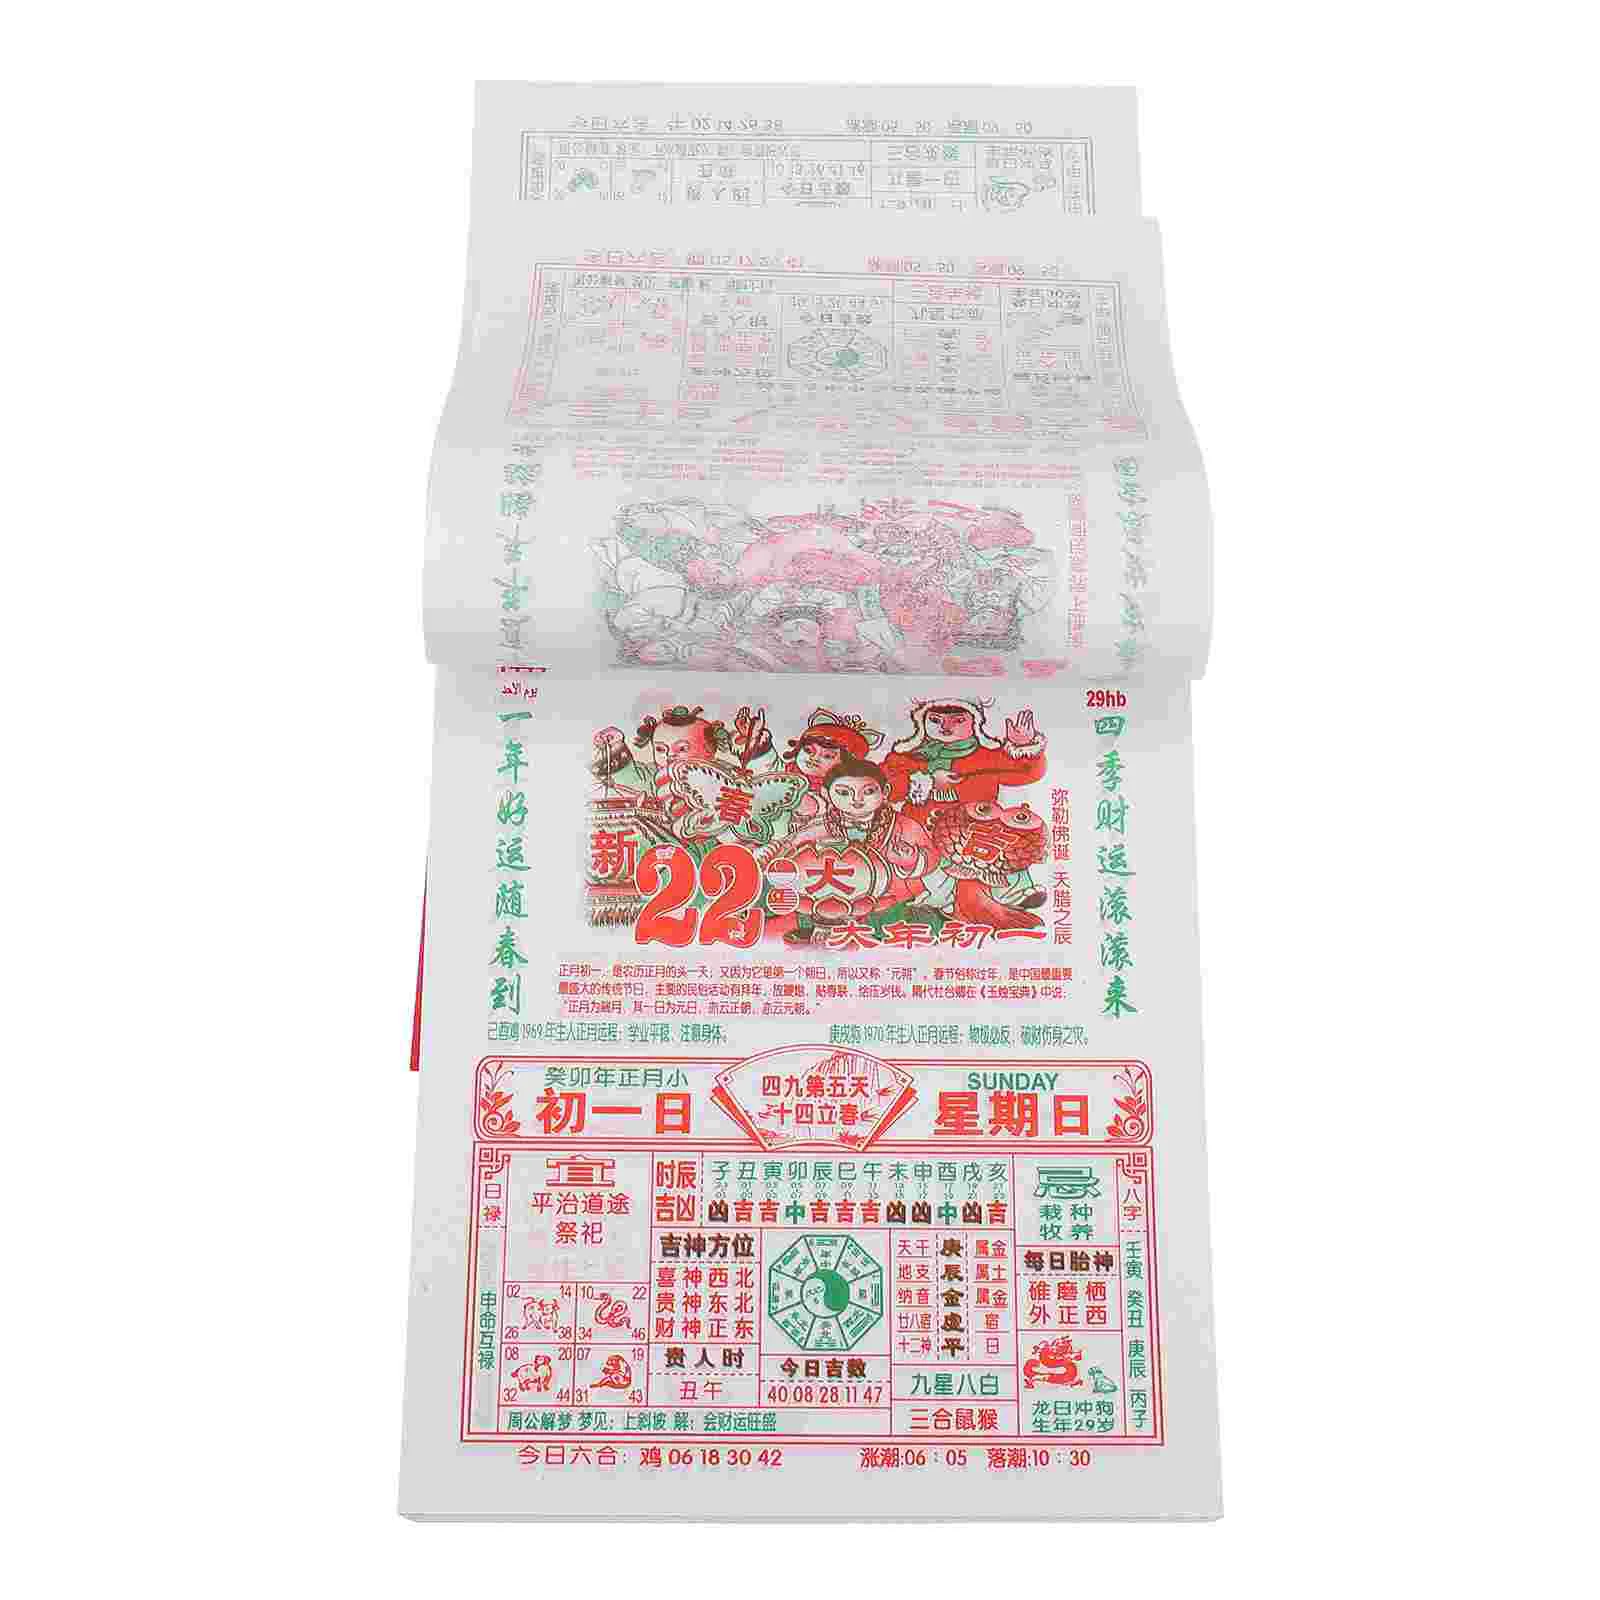 Китайский традиционный календарь Год кролика, Бумажный календарь, поддающийся разрыву, Китайский календарь Год кролика5